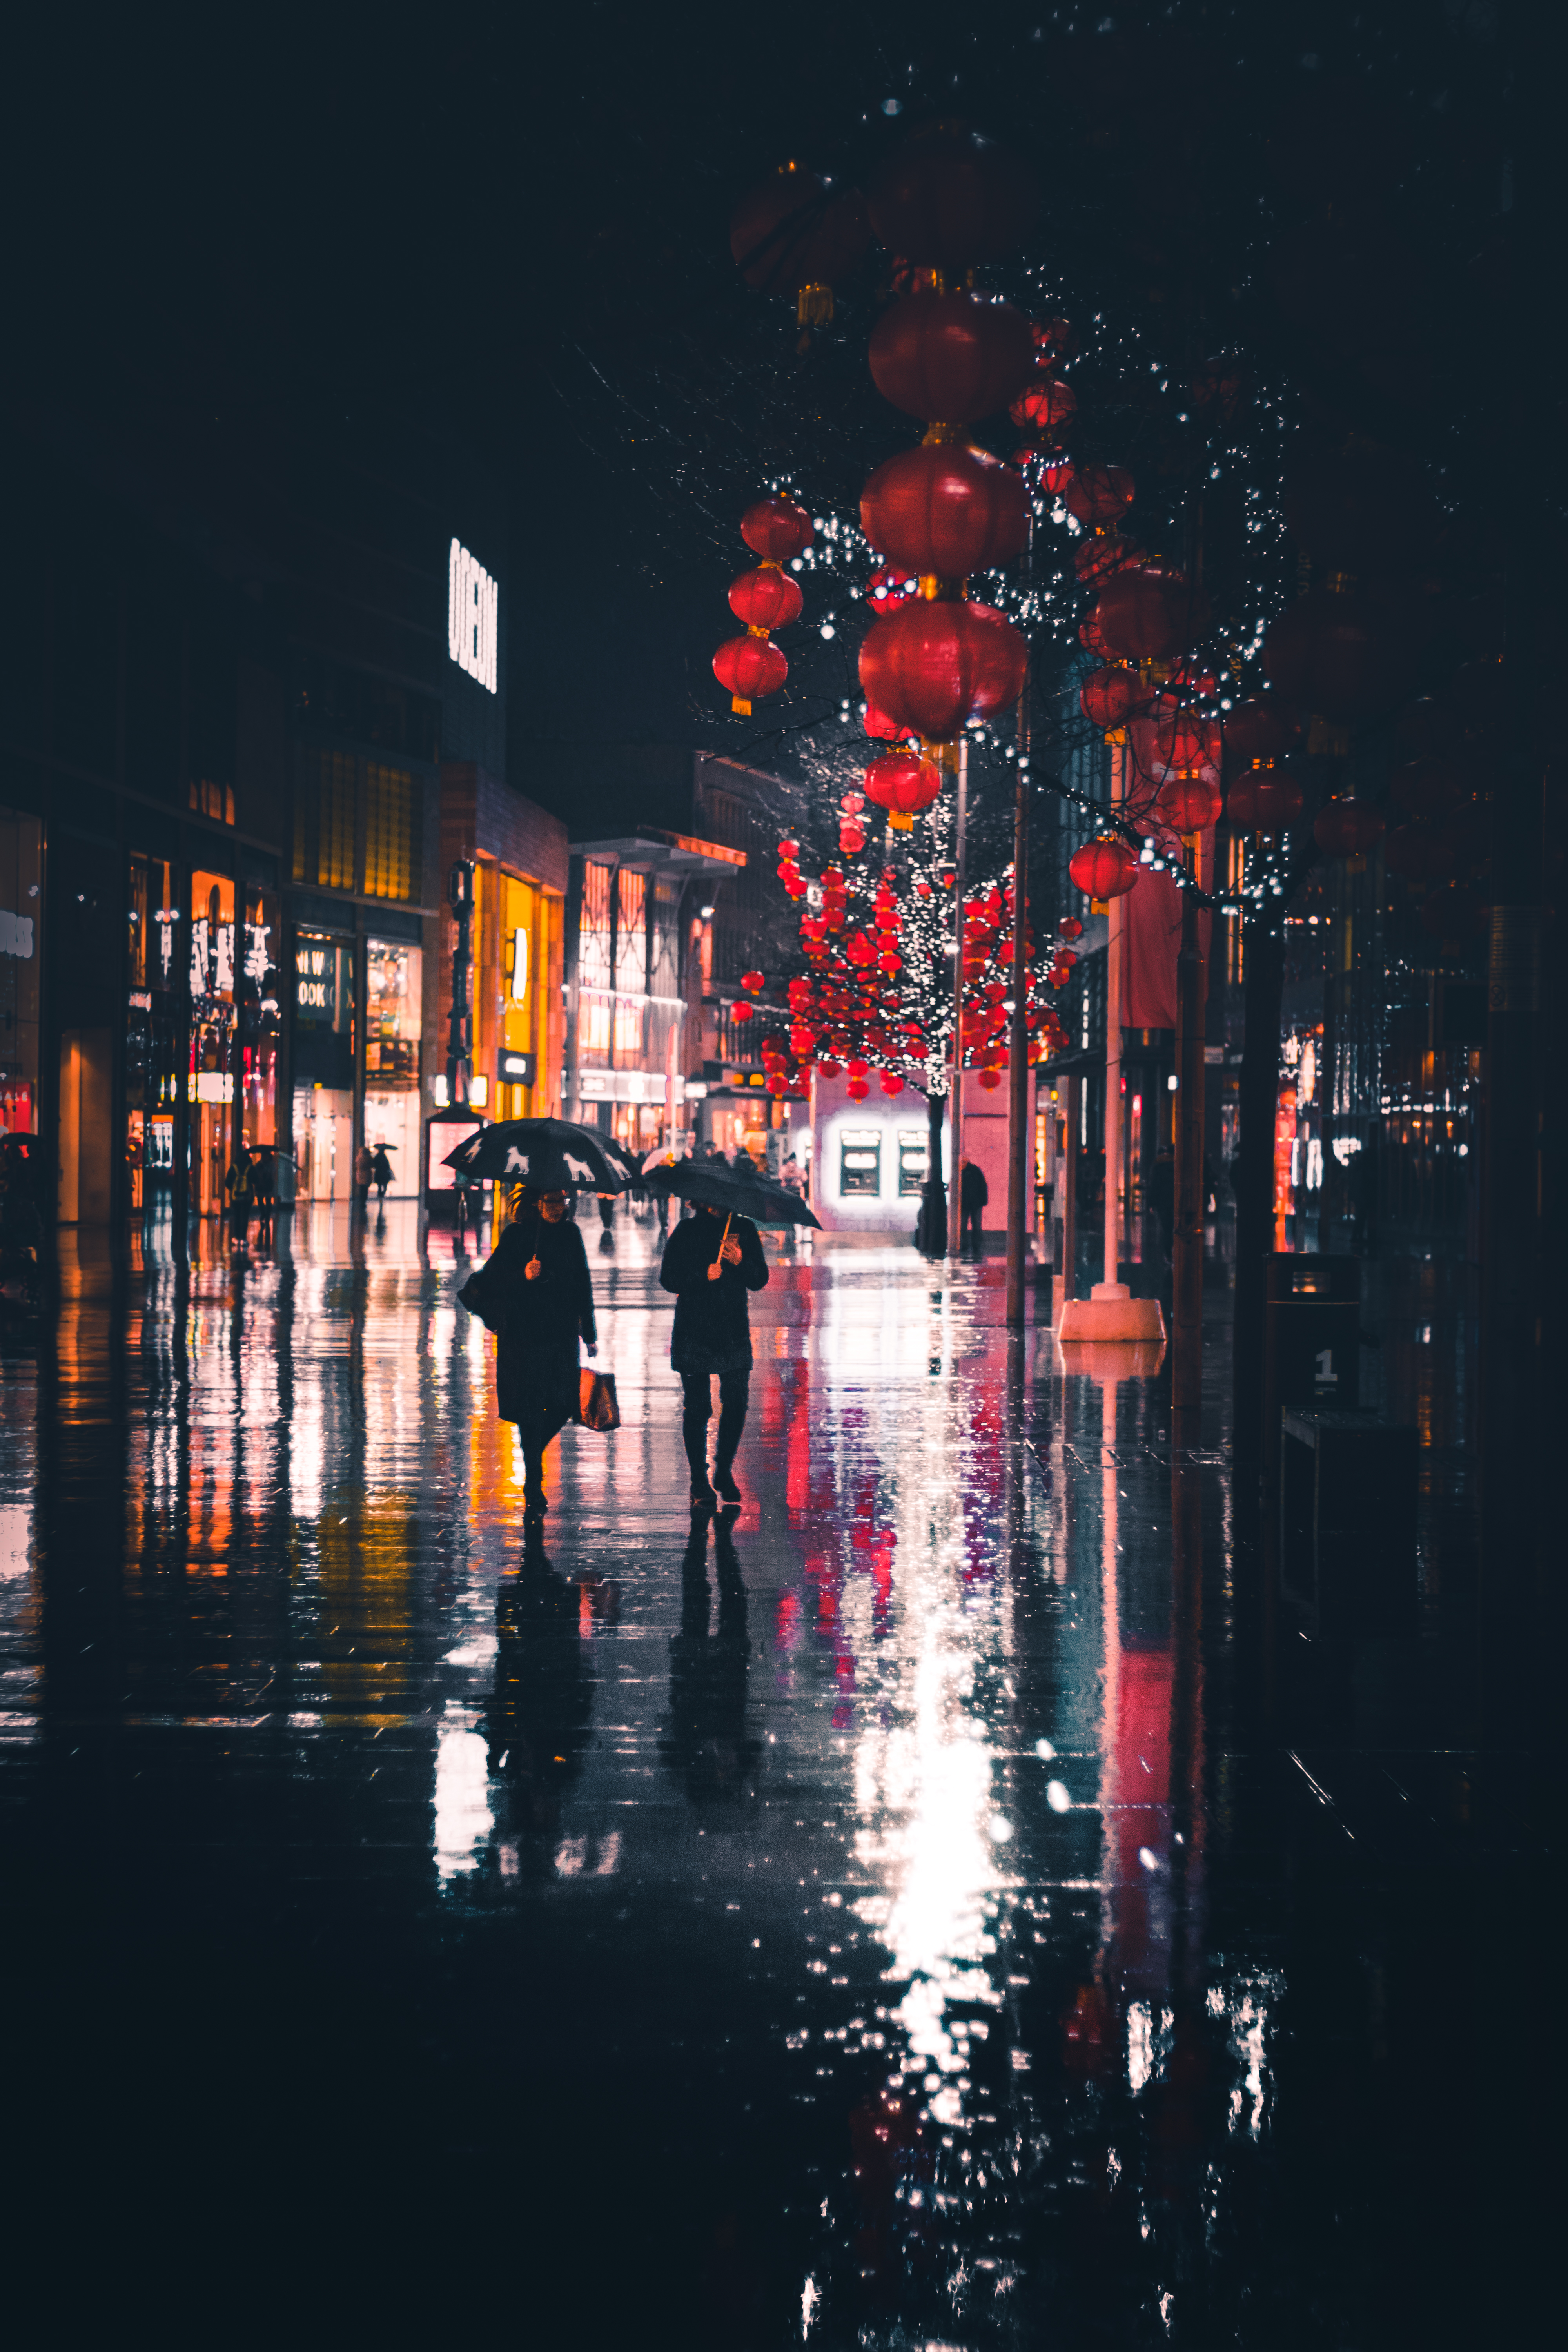 都市雨夜